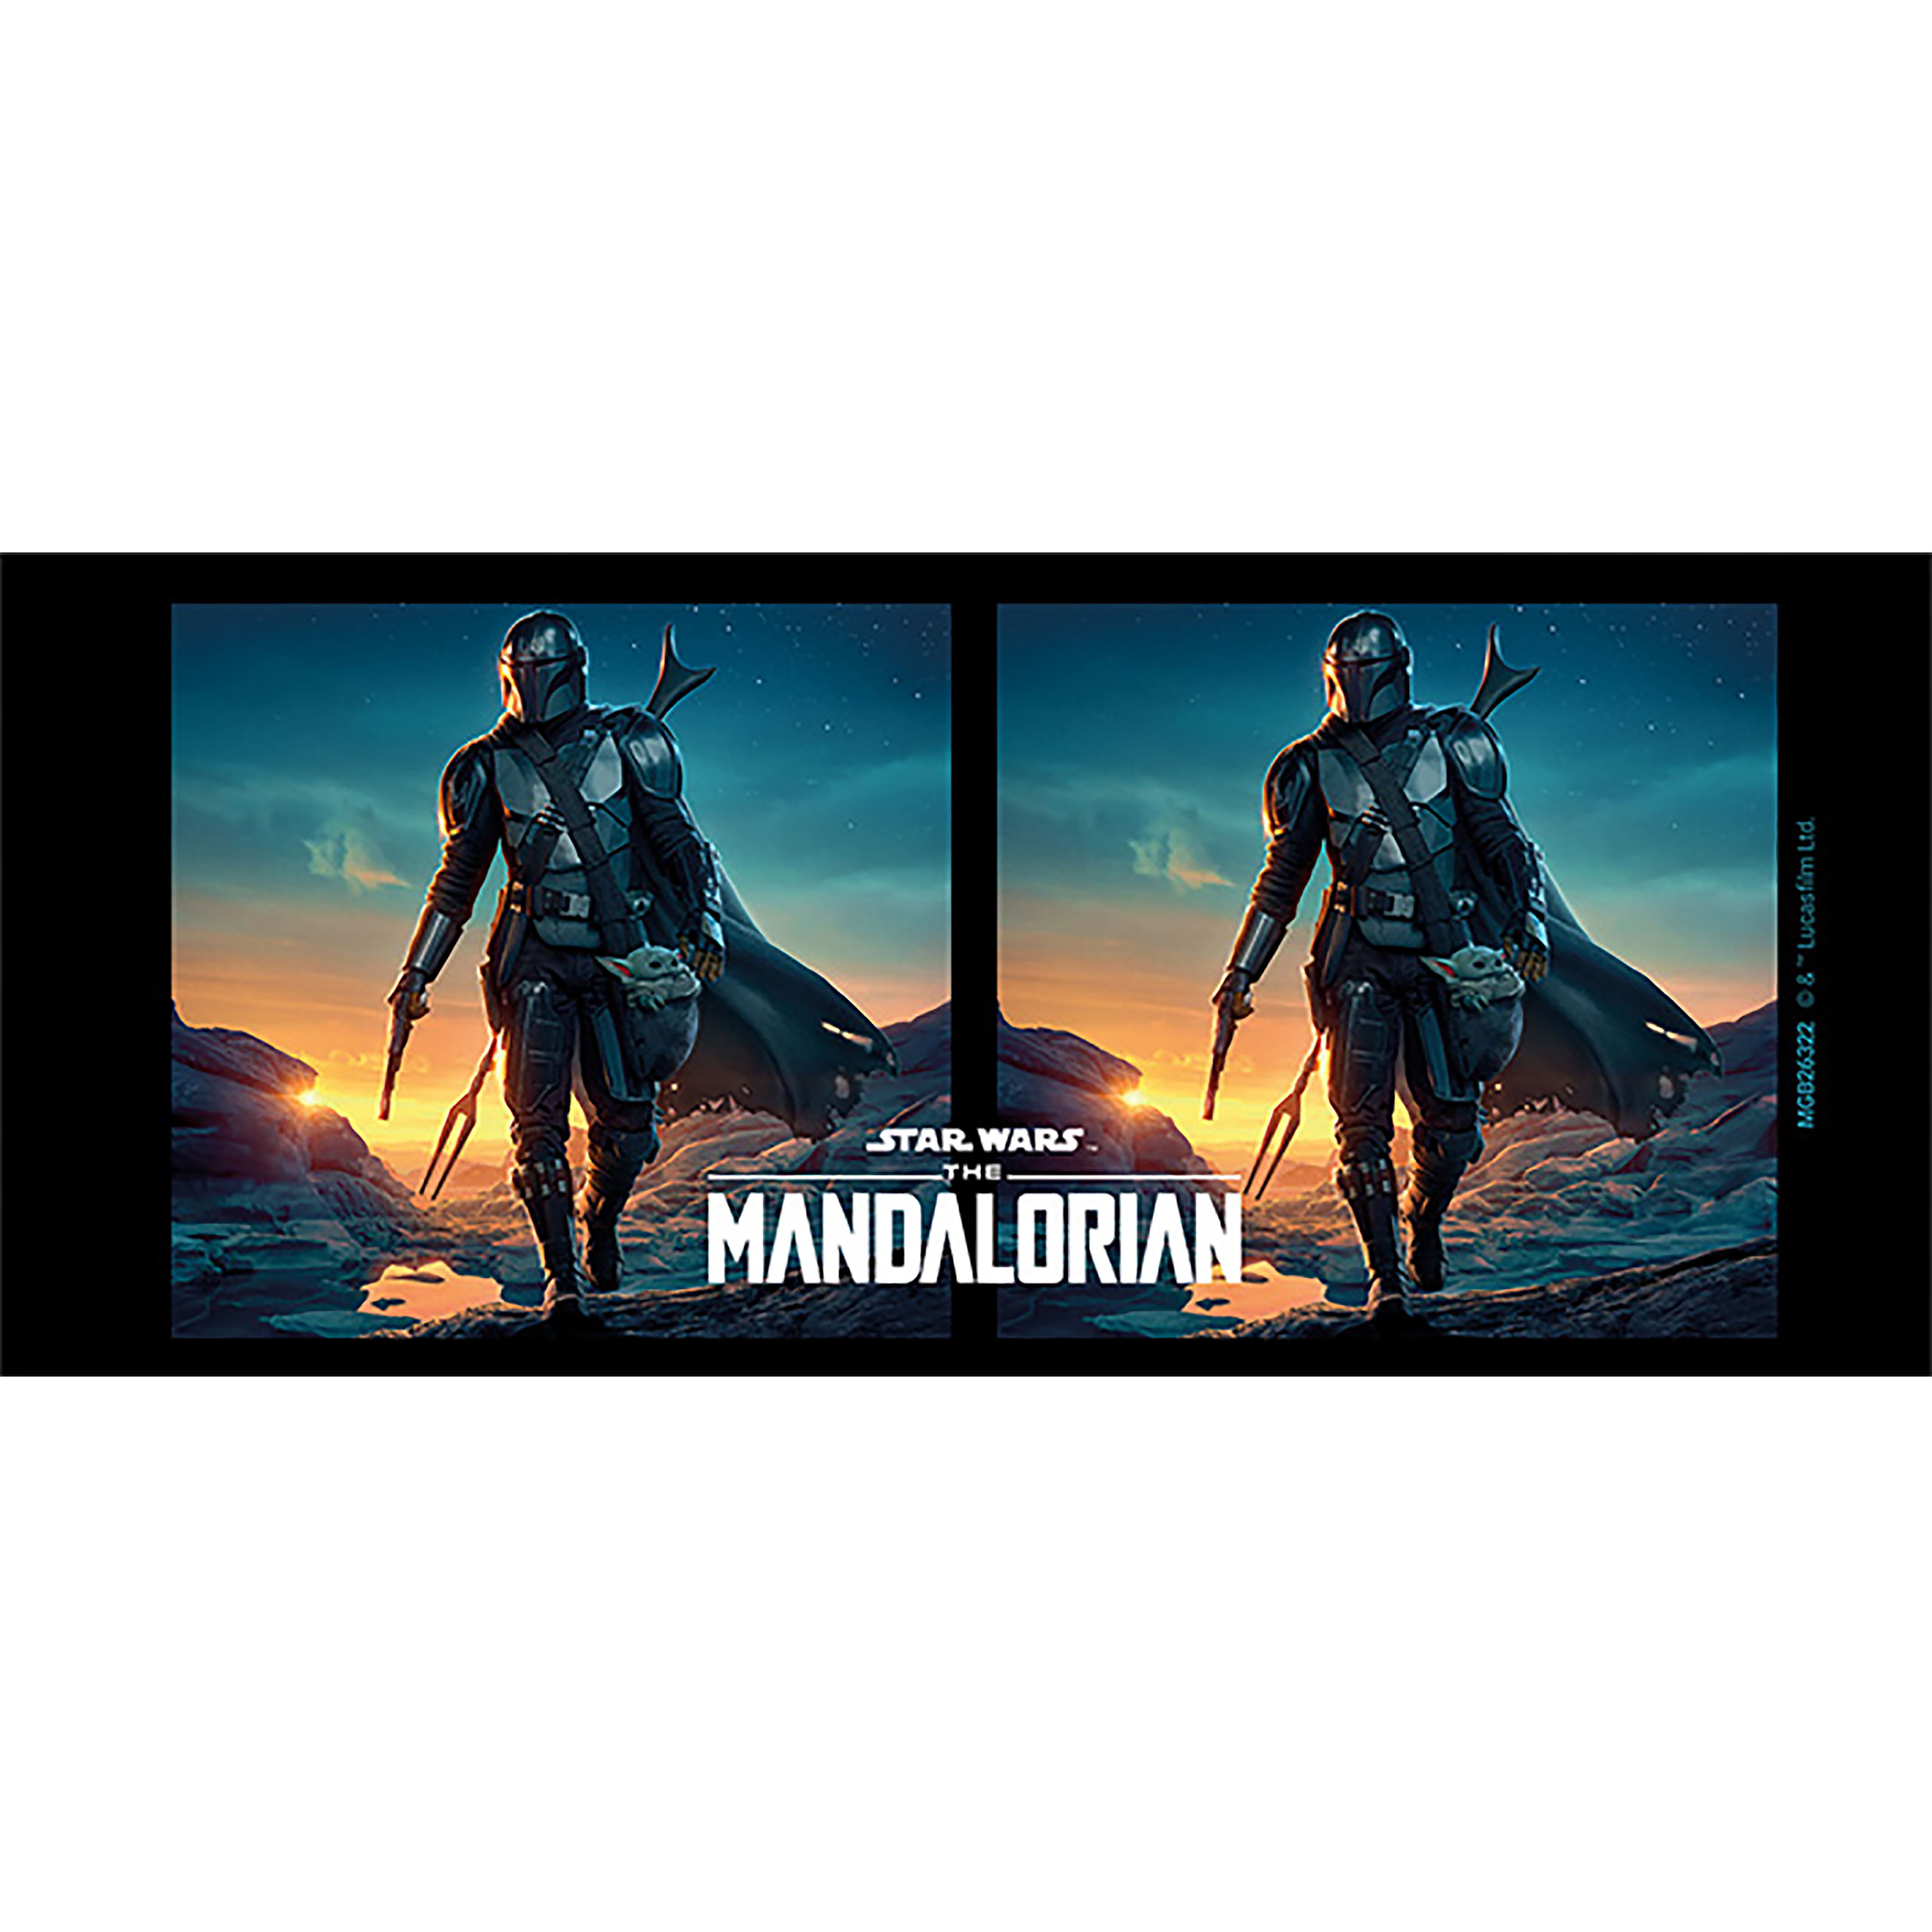 Mandalorian Nightfall Mug - Star Wars The Mandalorian